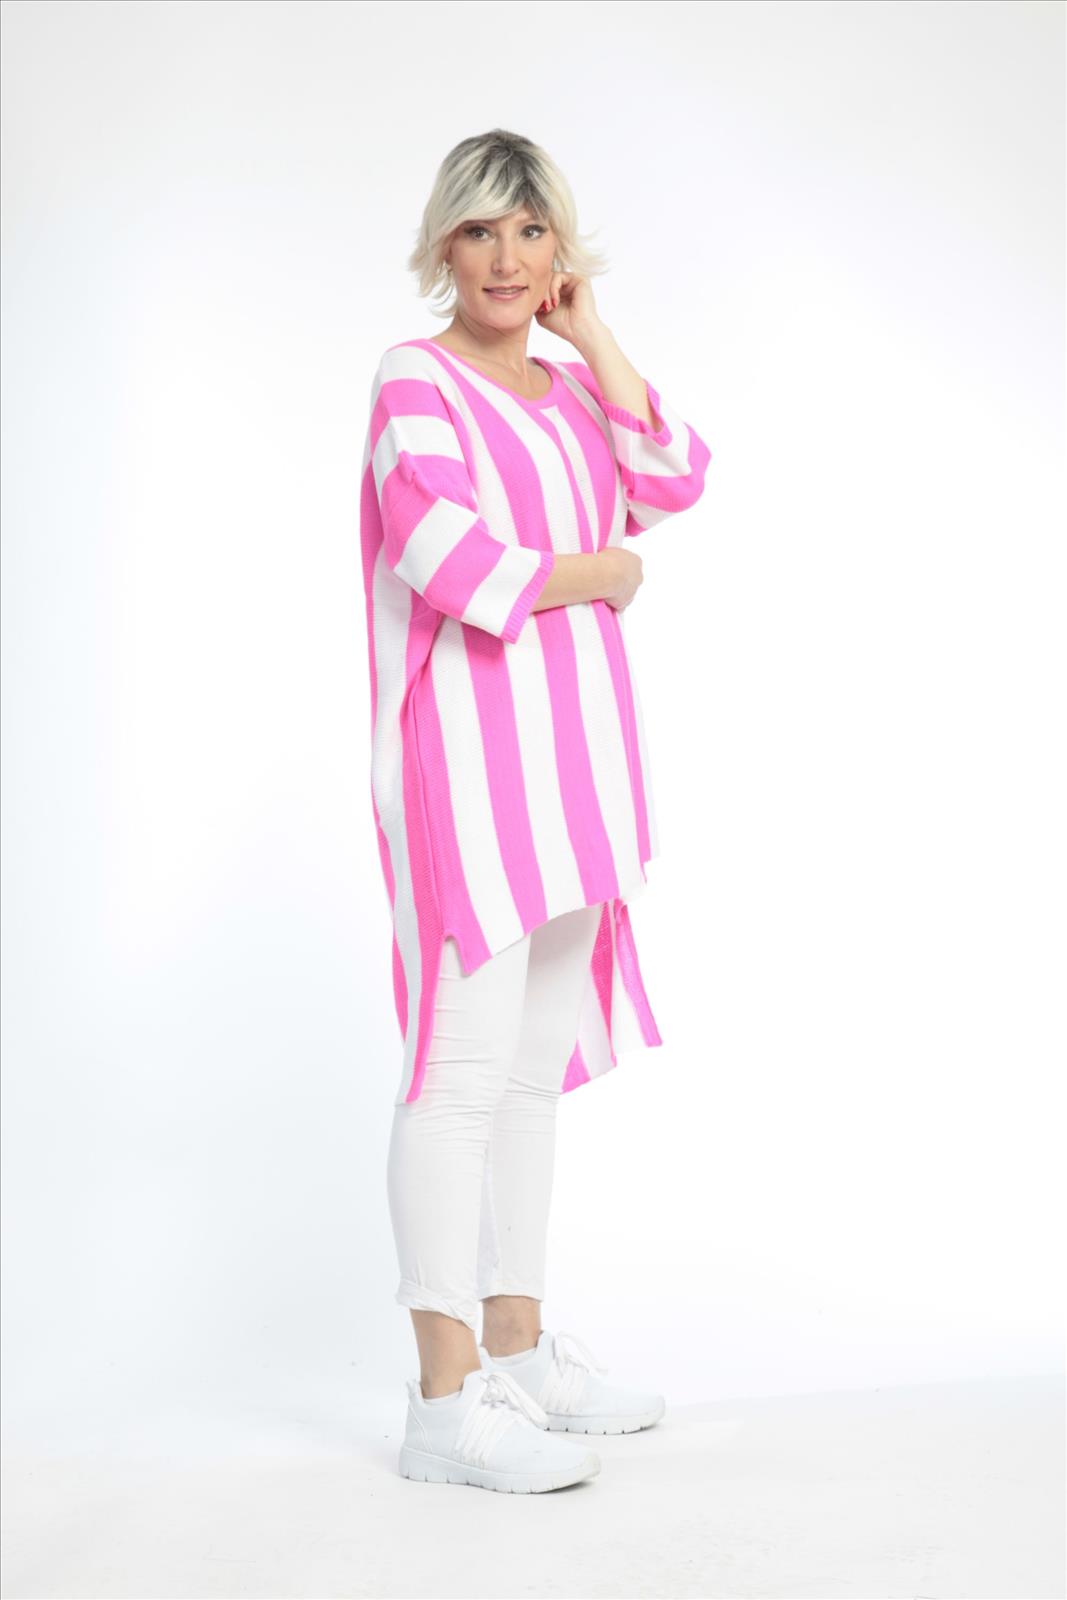 Alltags Pullover in Vokuhila Form aus feiner Strick Qualität, Pink-Weiß Lagenlook Oversize Mode B2B Großhandel